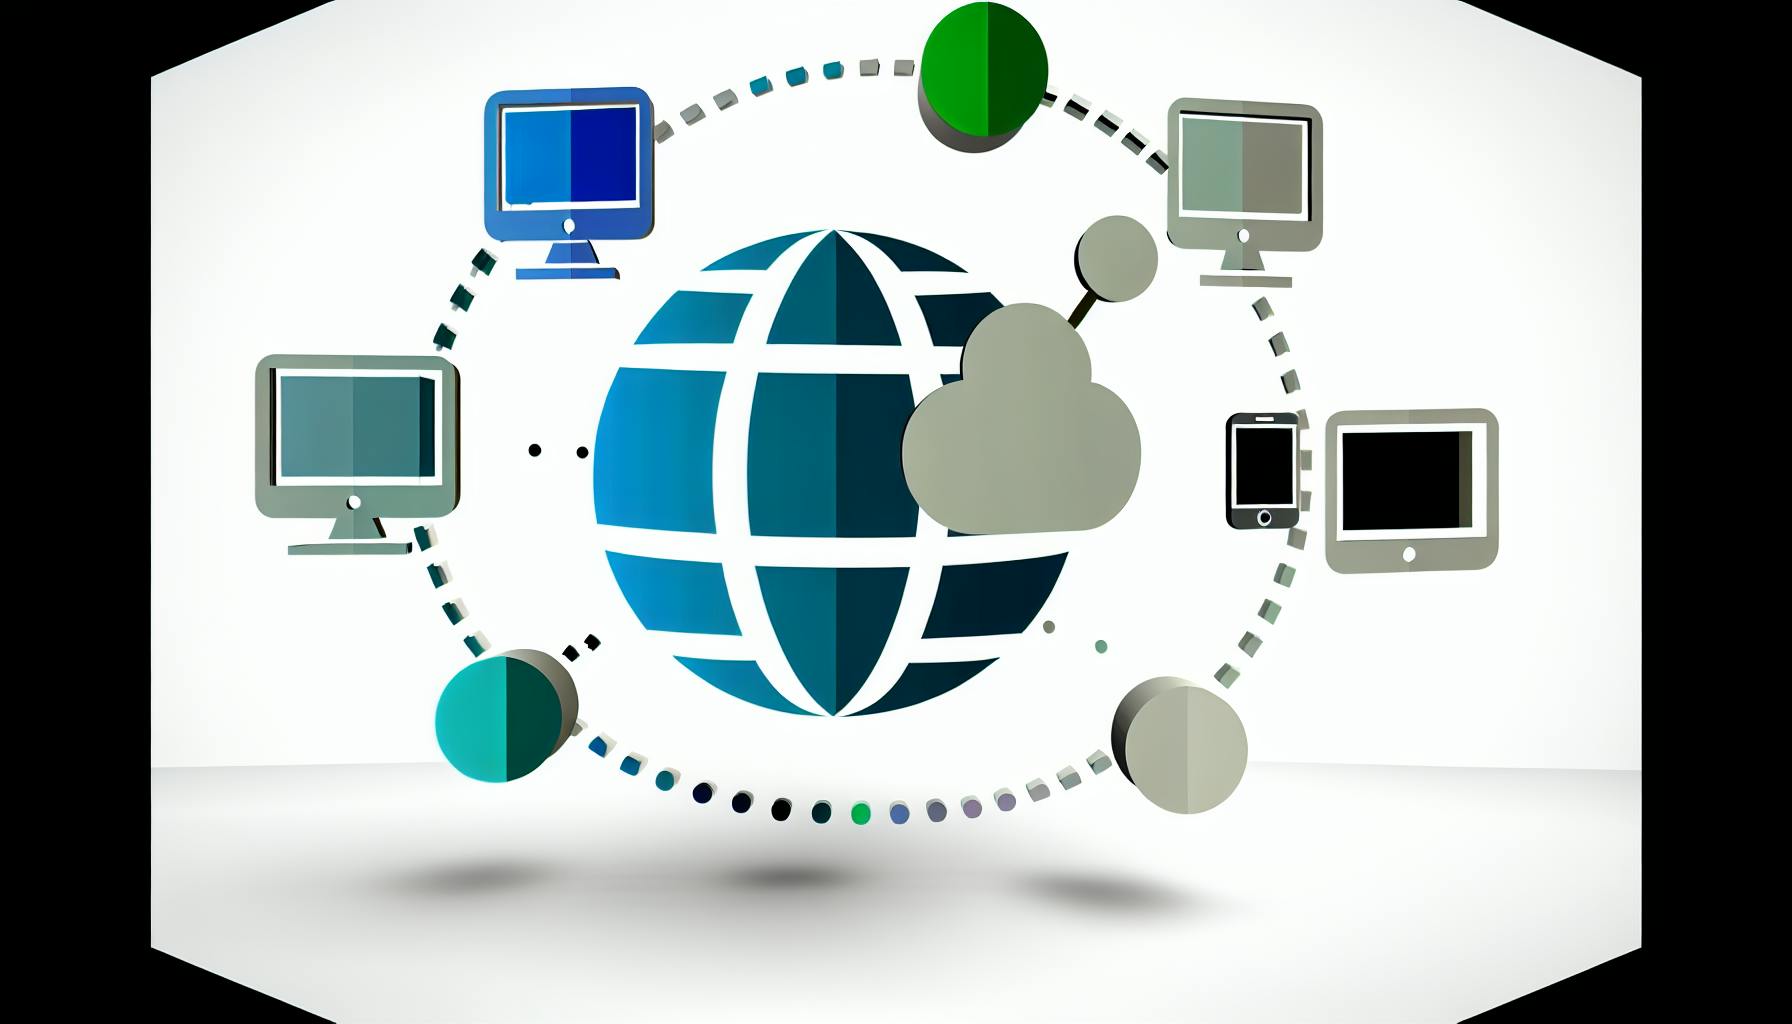 Nettverk support tjenester for alle enheter